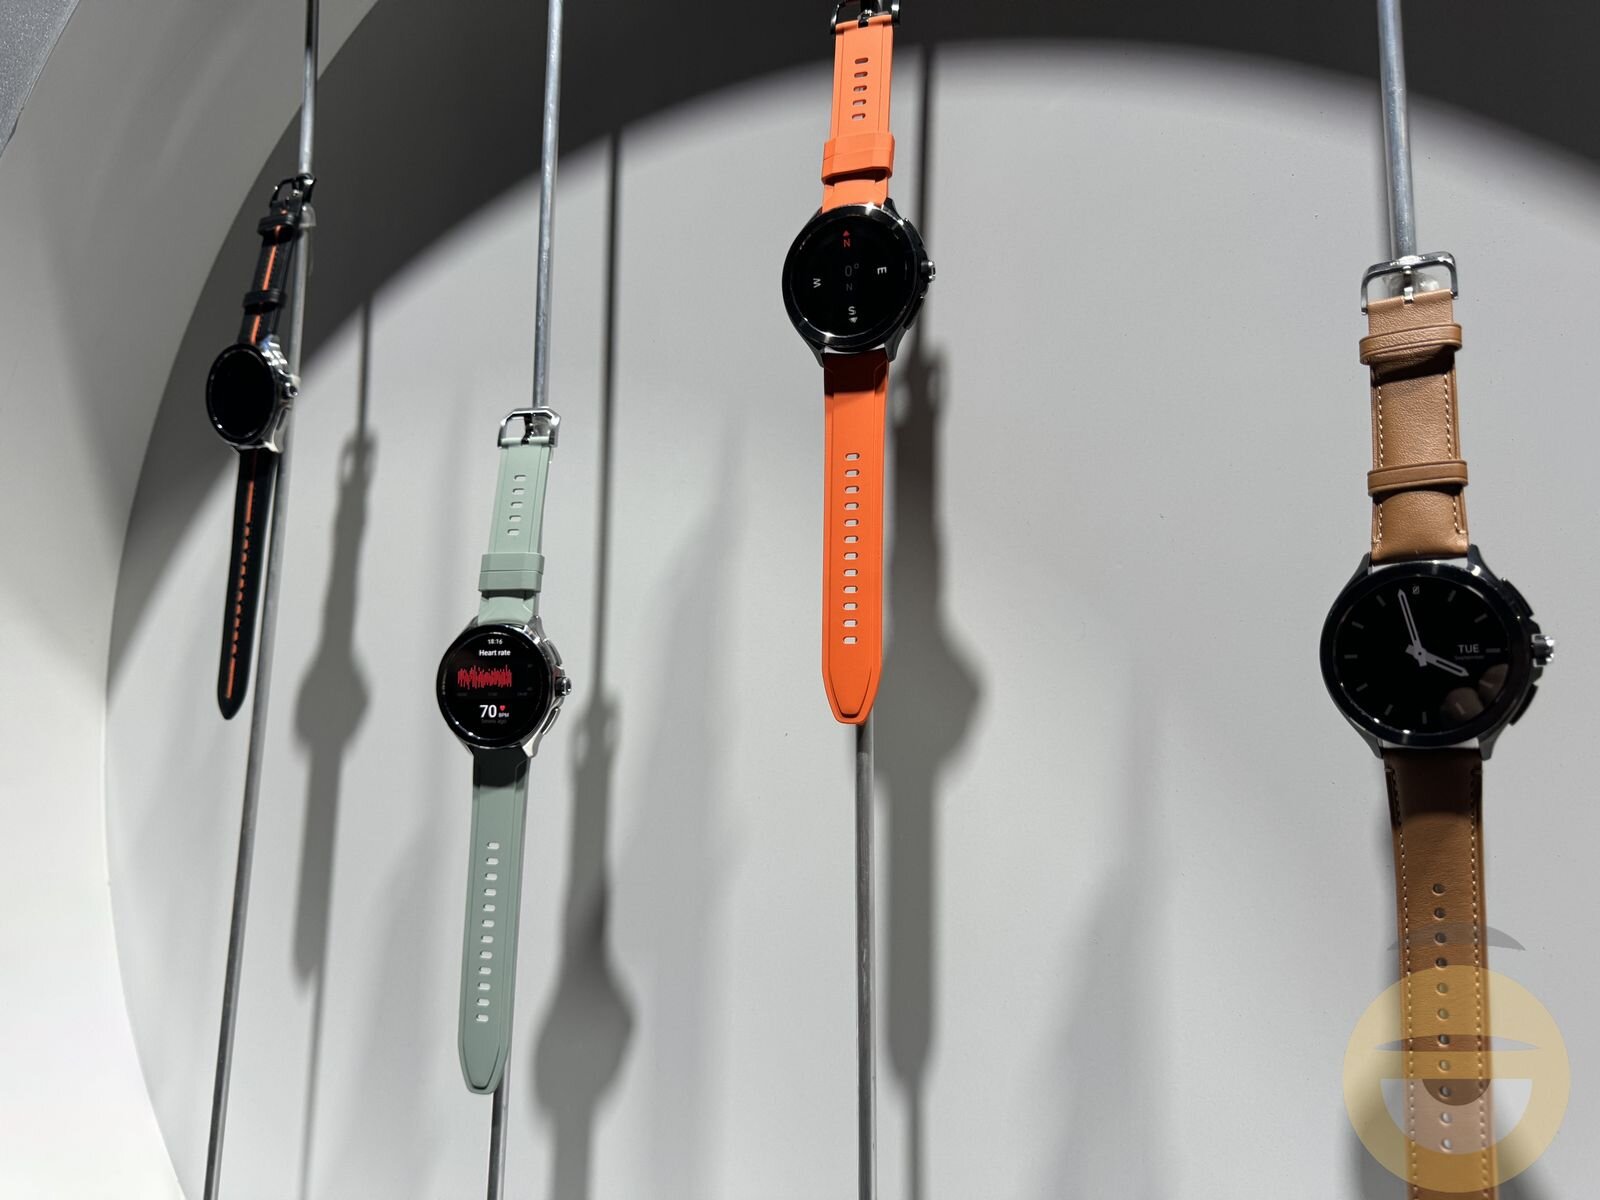 Το Watch 2 Pro είναι το πρώτο smartwatch της Xiaomi με Wear OS